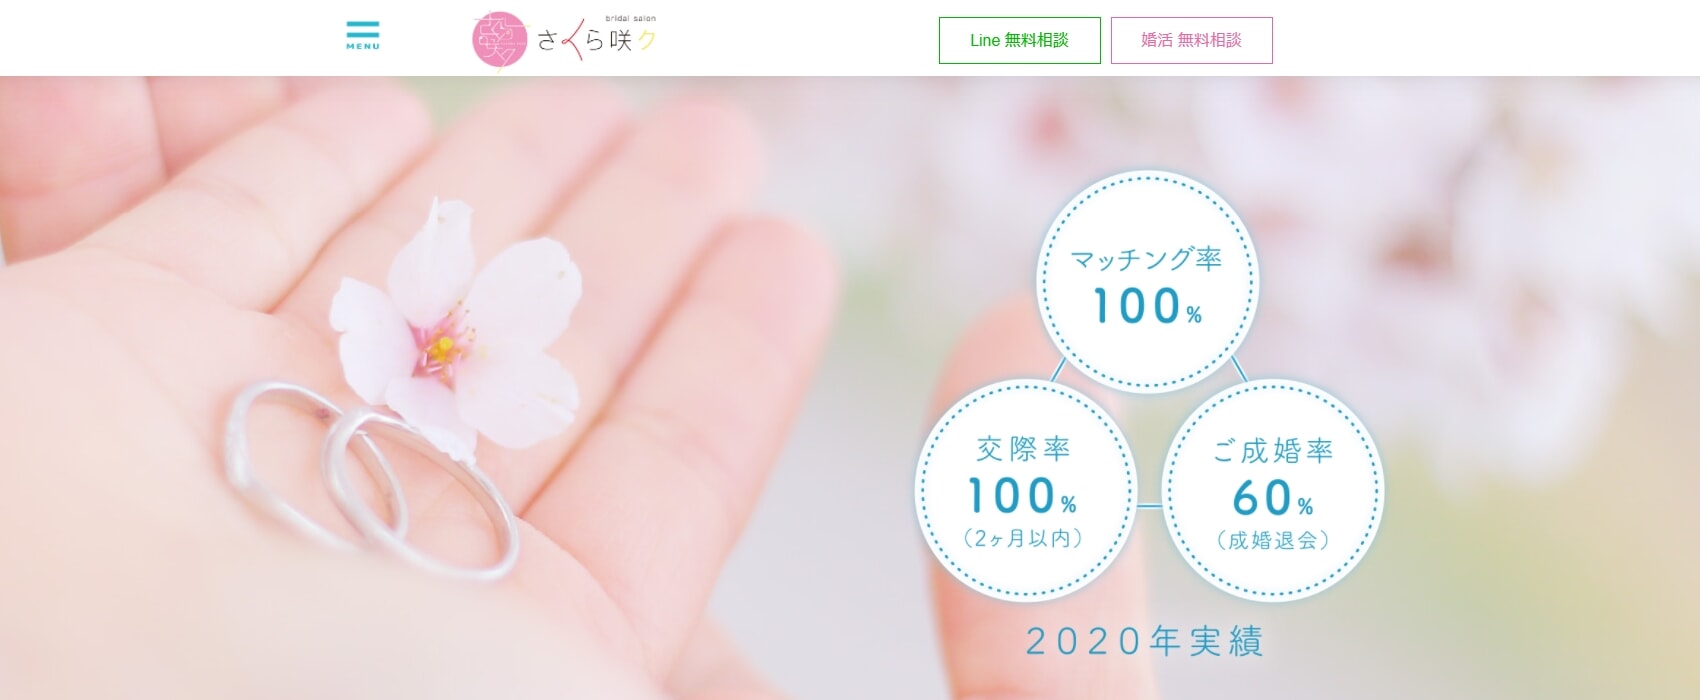 さくら咲ク結婚相談所の公式サイト画像